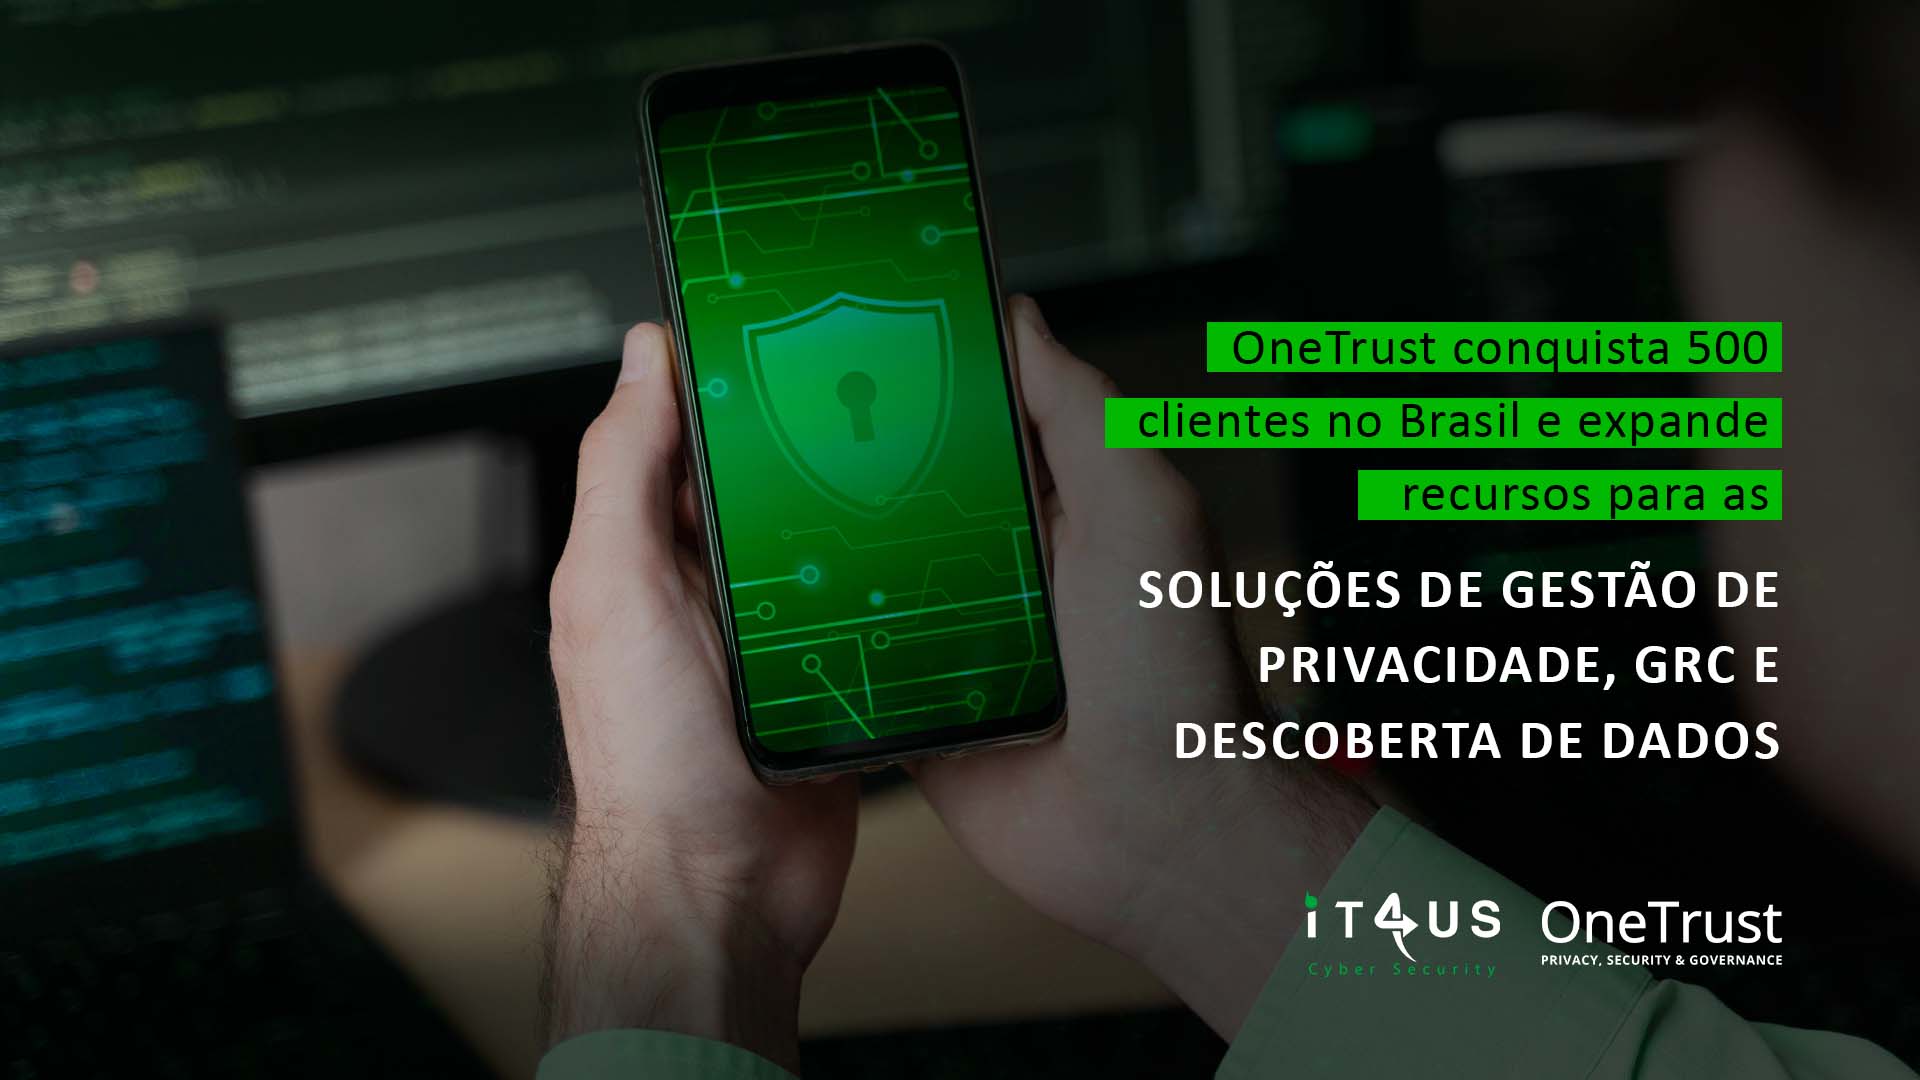 OneTrust conquista 500 clientes no Brasil e expande recursos para as Soluções de Gestão de Privacidade, GRC e Descoberta de Dados